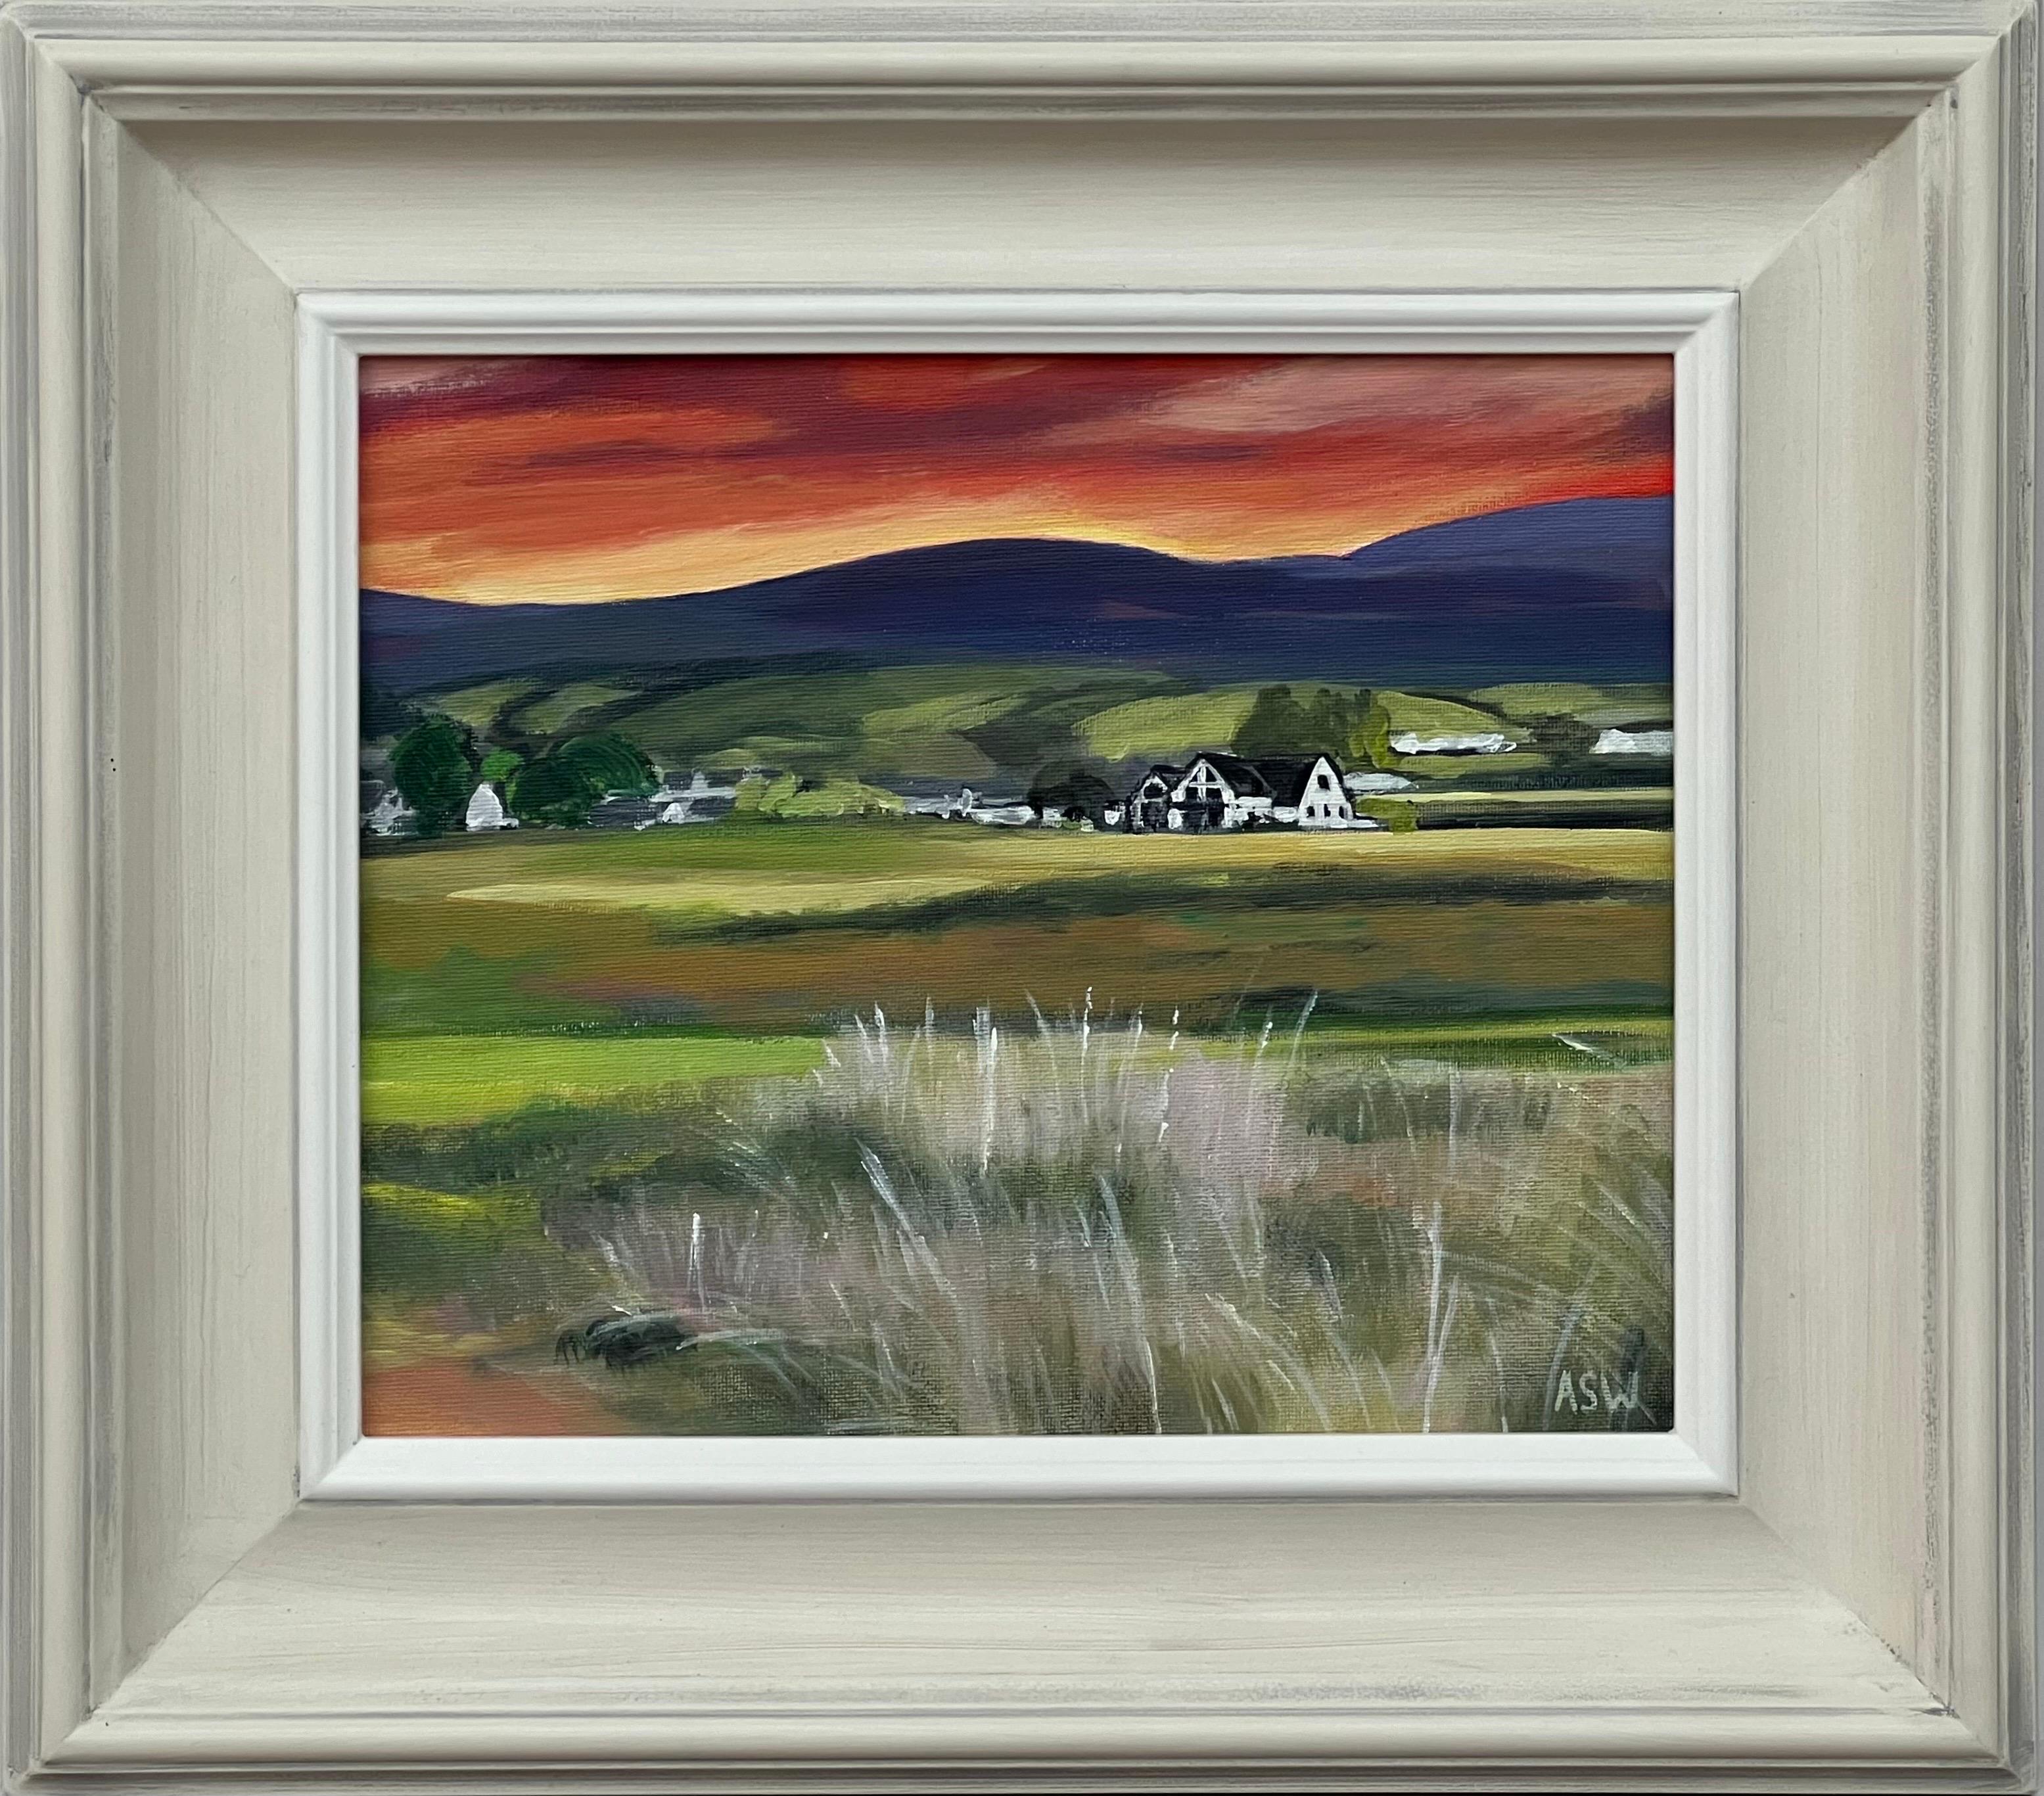 Abstract Painting Angela Wakefield - Coucher de soleil sur le terrain de golf de Brora dans les Highlands écossais par un artiste contemporain